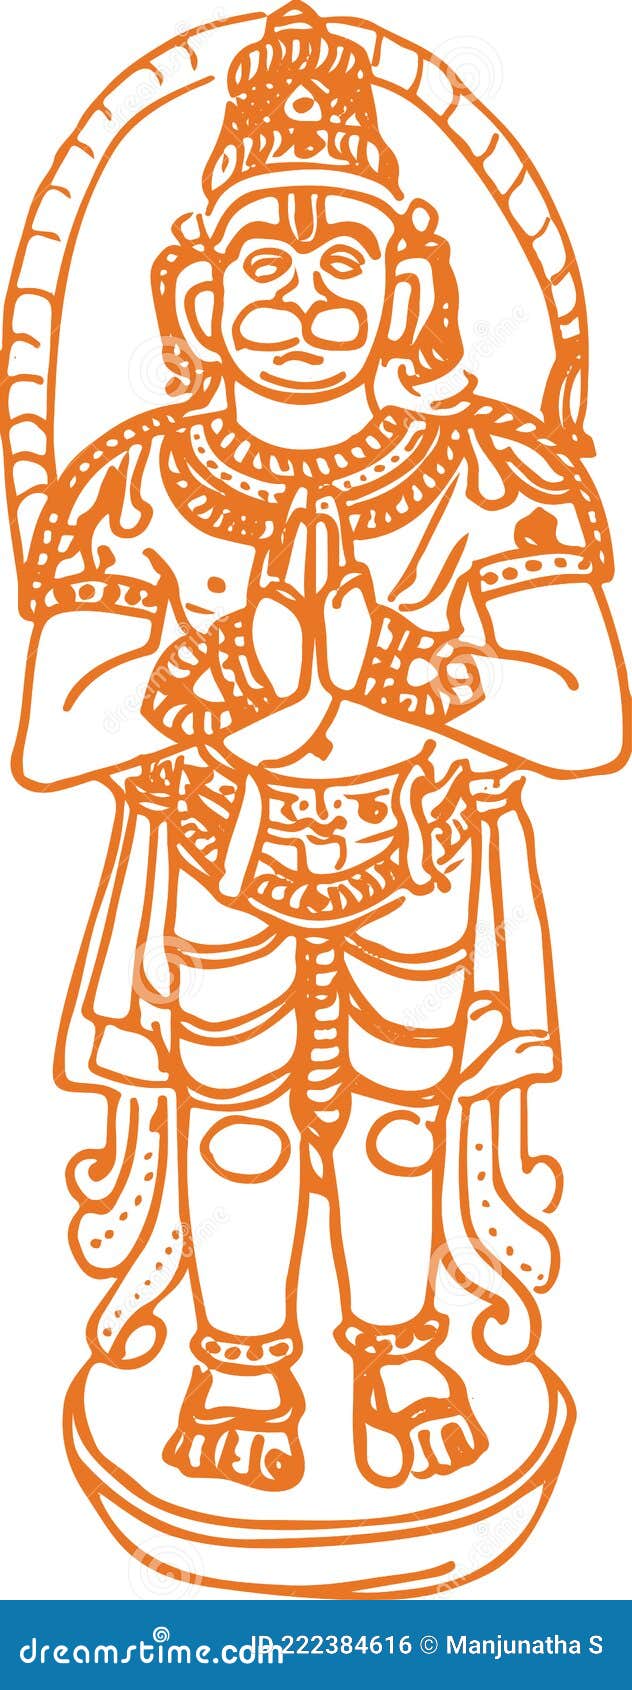 Easy Hanuman drawing | Book art drawings, Line art drawings, Art drawings  sketches creative